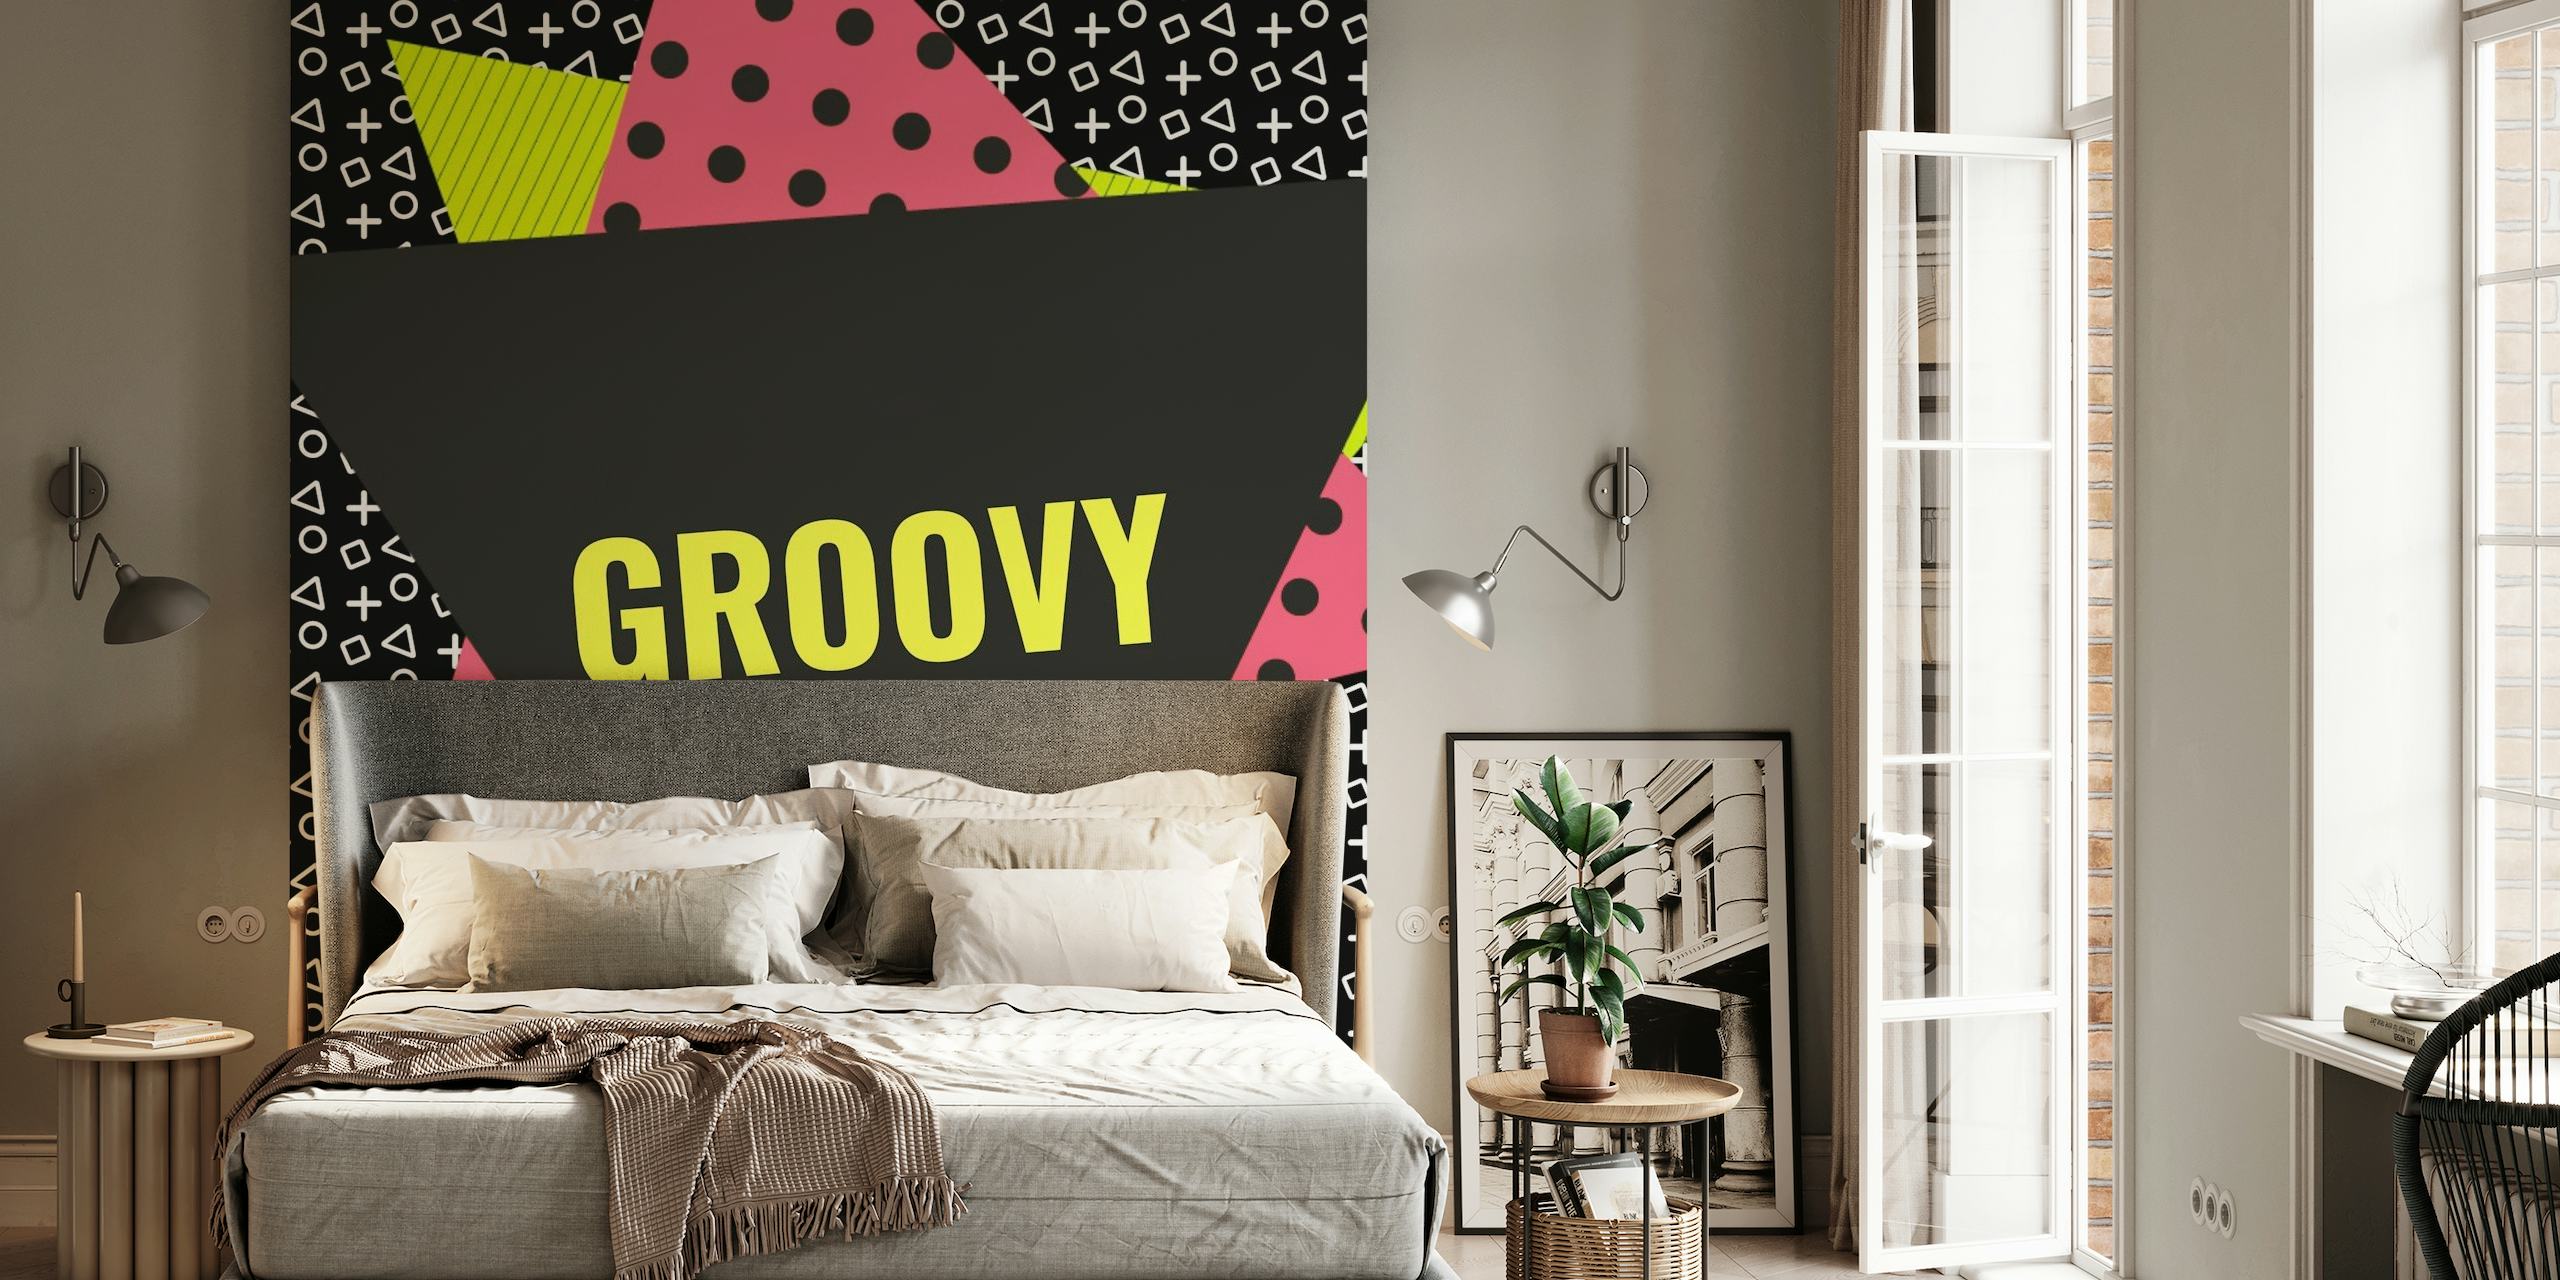 Memphis Style Geometrinen seinämaalaus "Groovy" tekstillä, abstrakteilla muodoilla ja rohkeilla väreillä